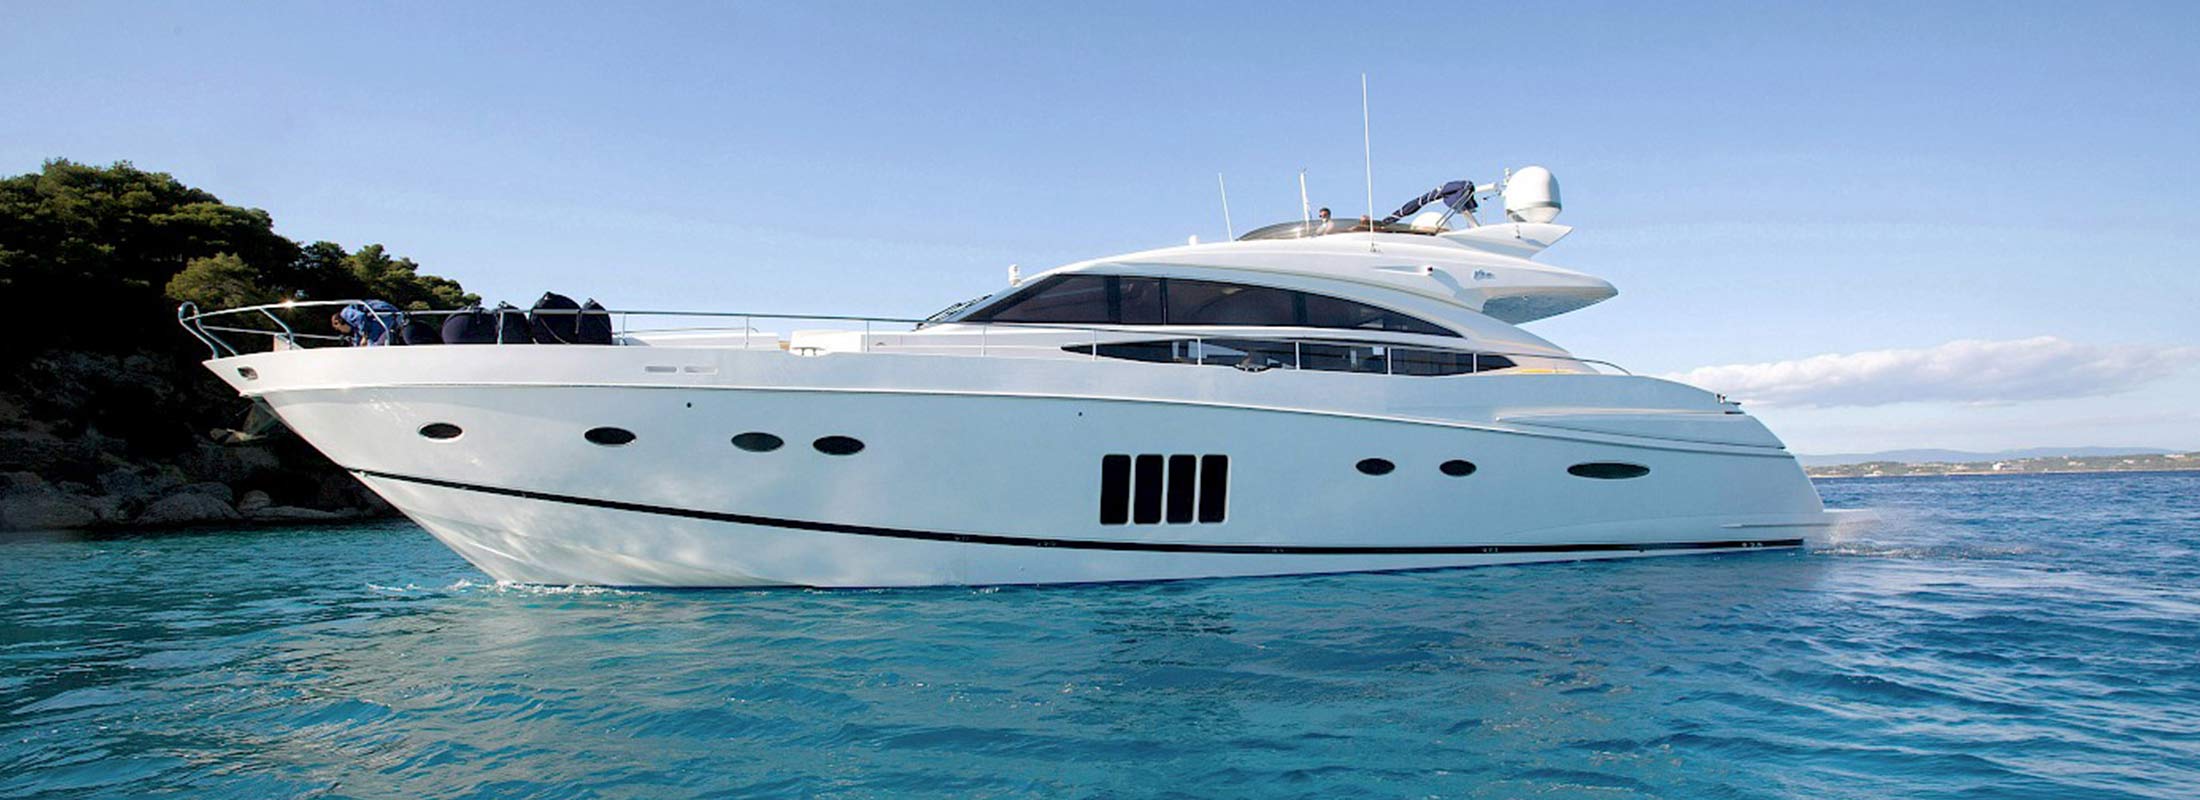 Catherine Motor Yacht for Charter Mediterranean slider 1